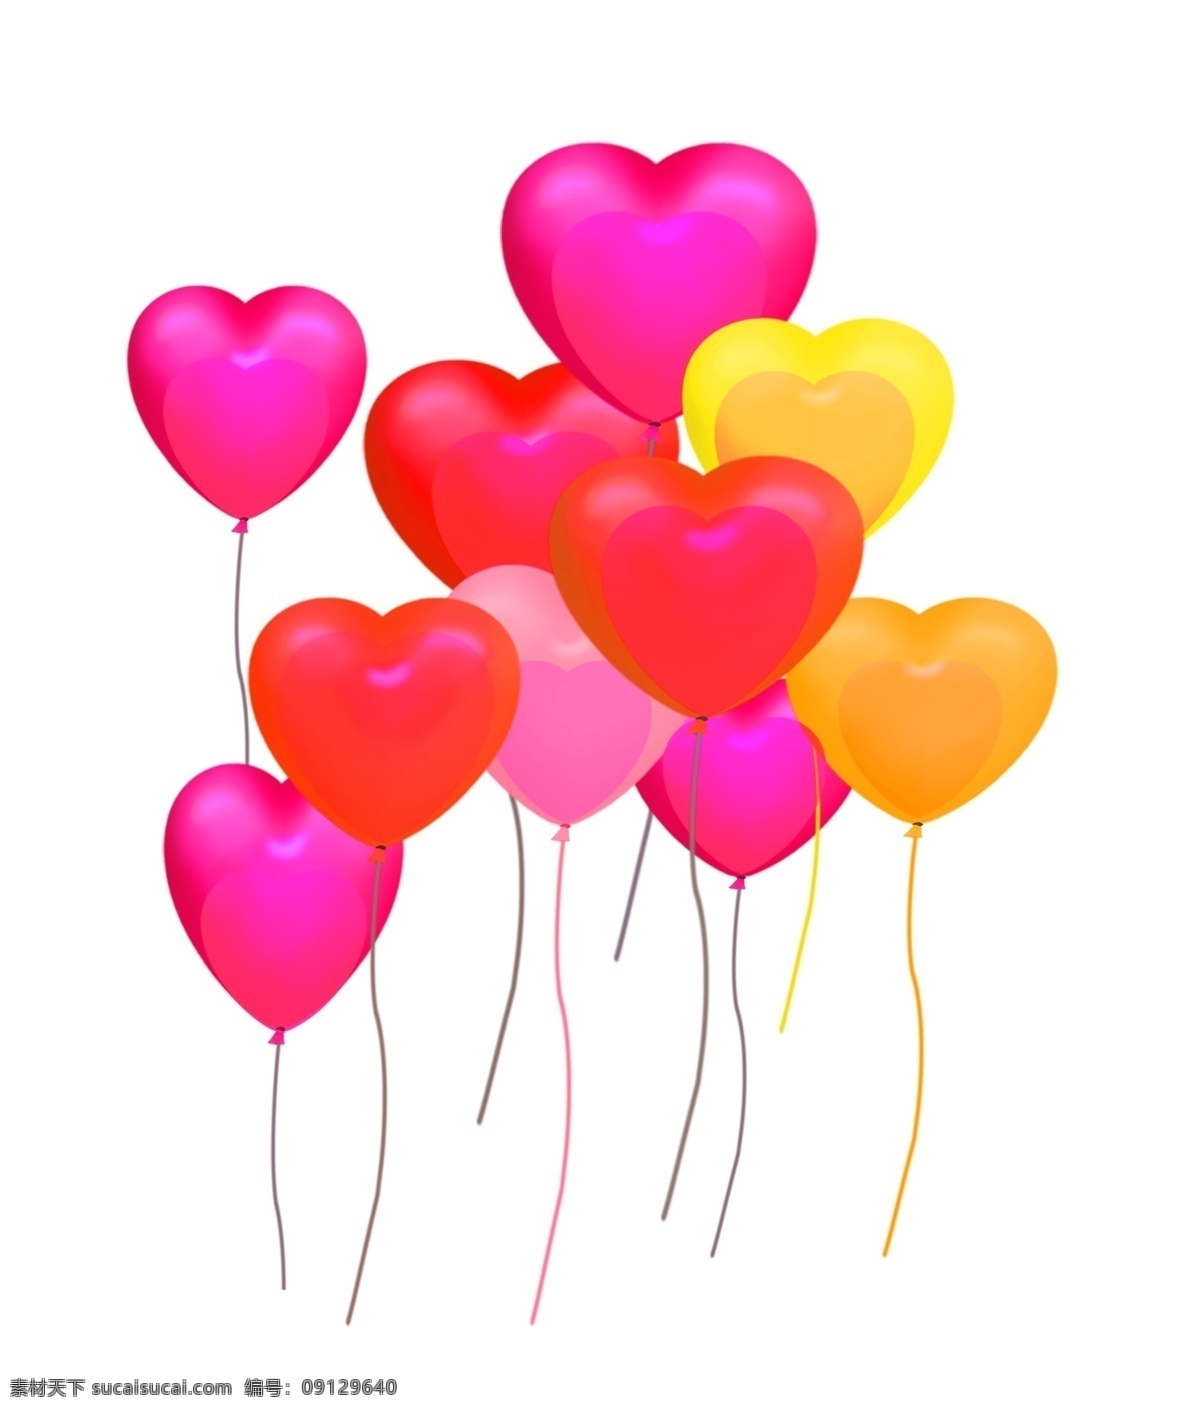 彩色 飘荡 气球 插画 飘荡的气球 爱心气球 卡通插画 气球插画 爱情插画 礼物插画 内套的气球